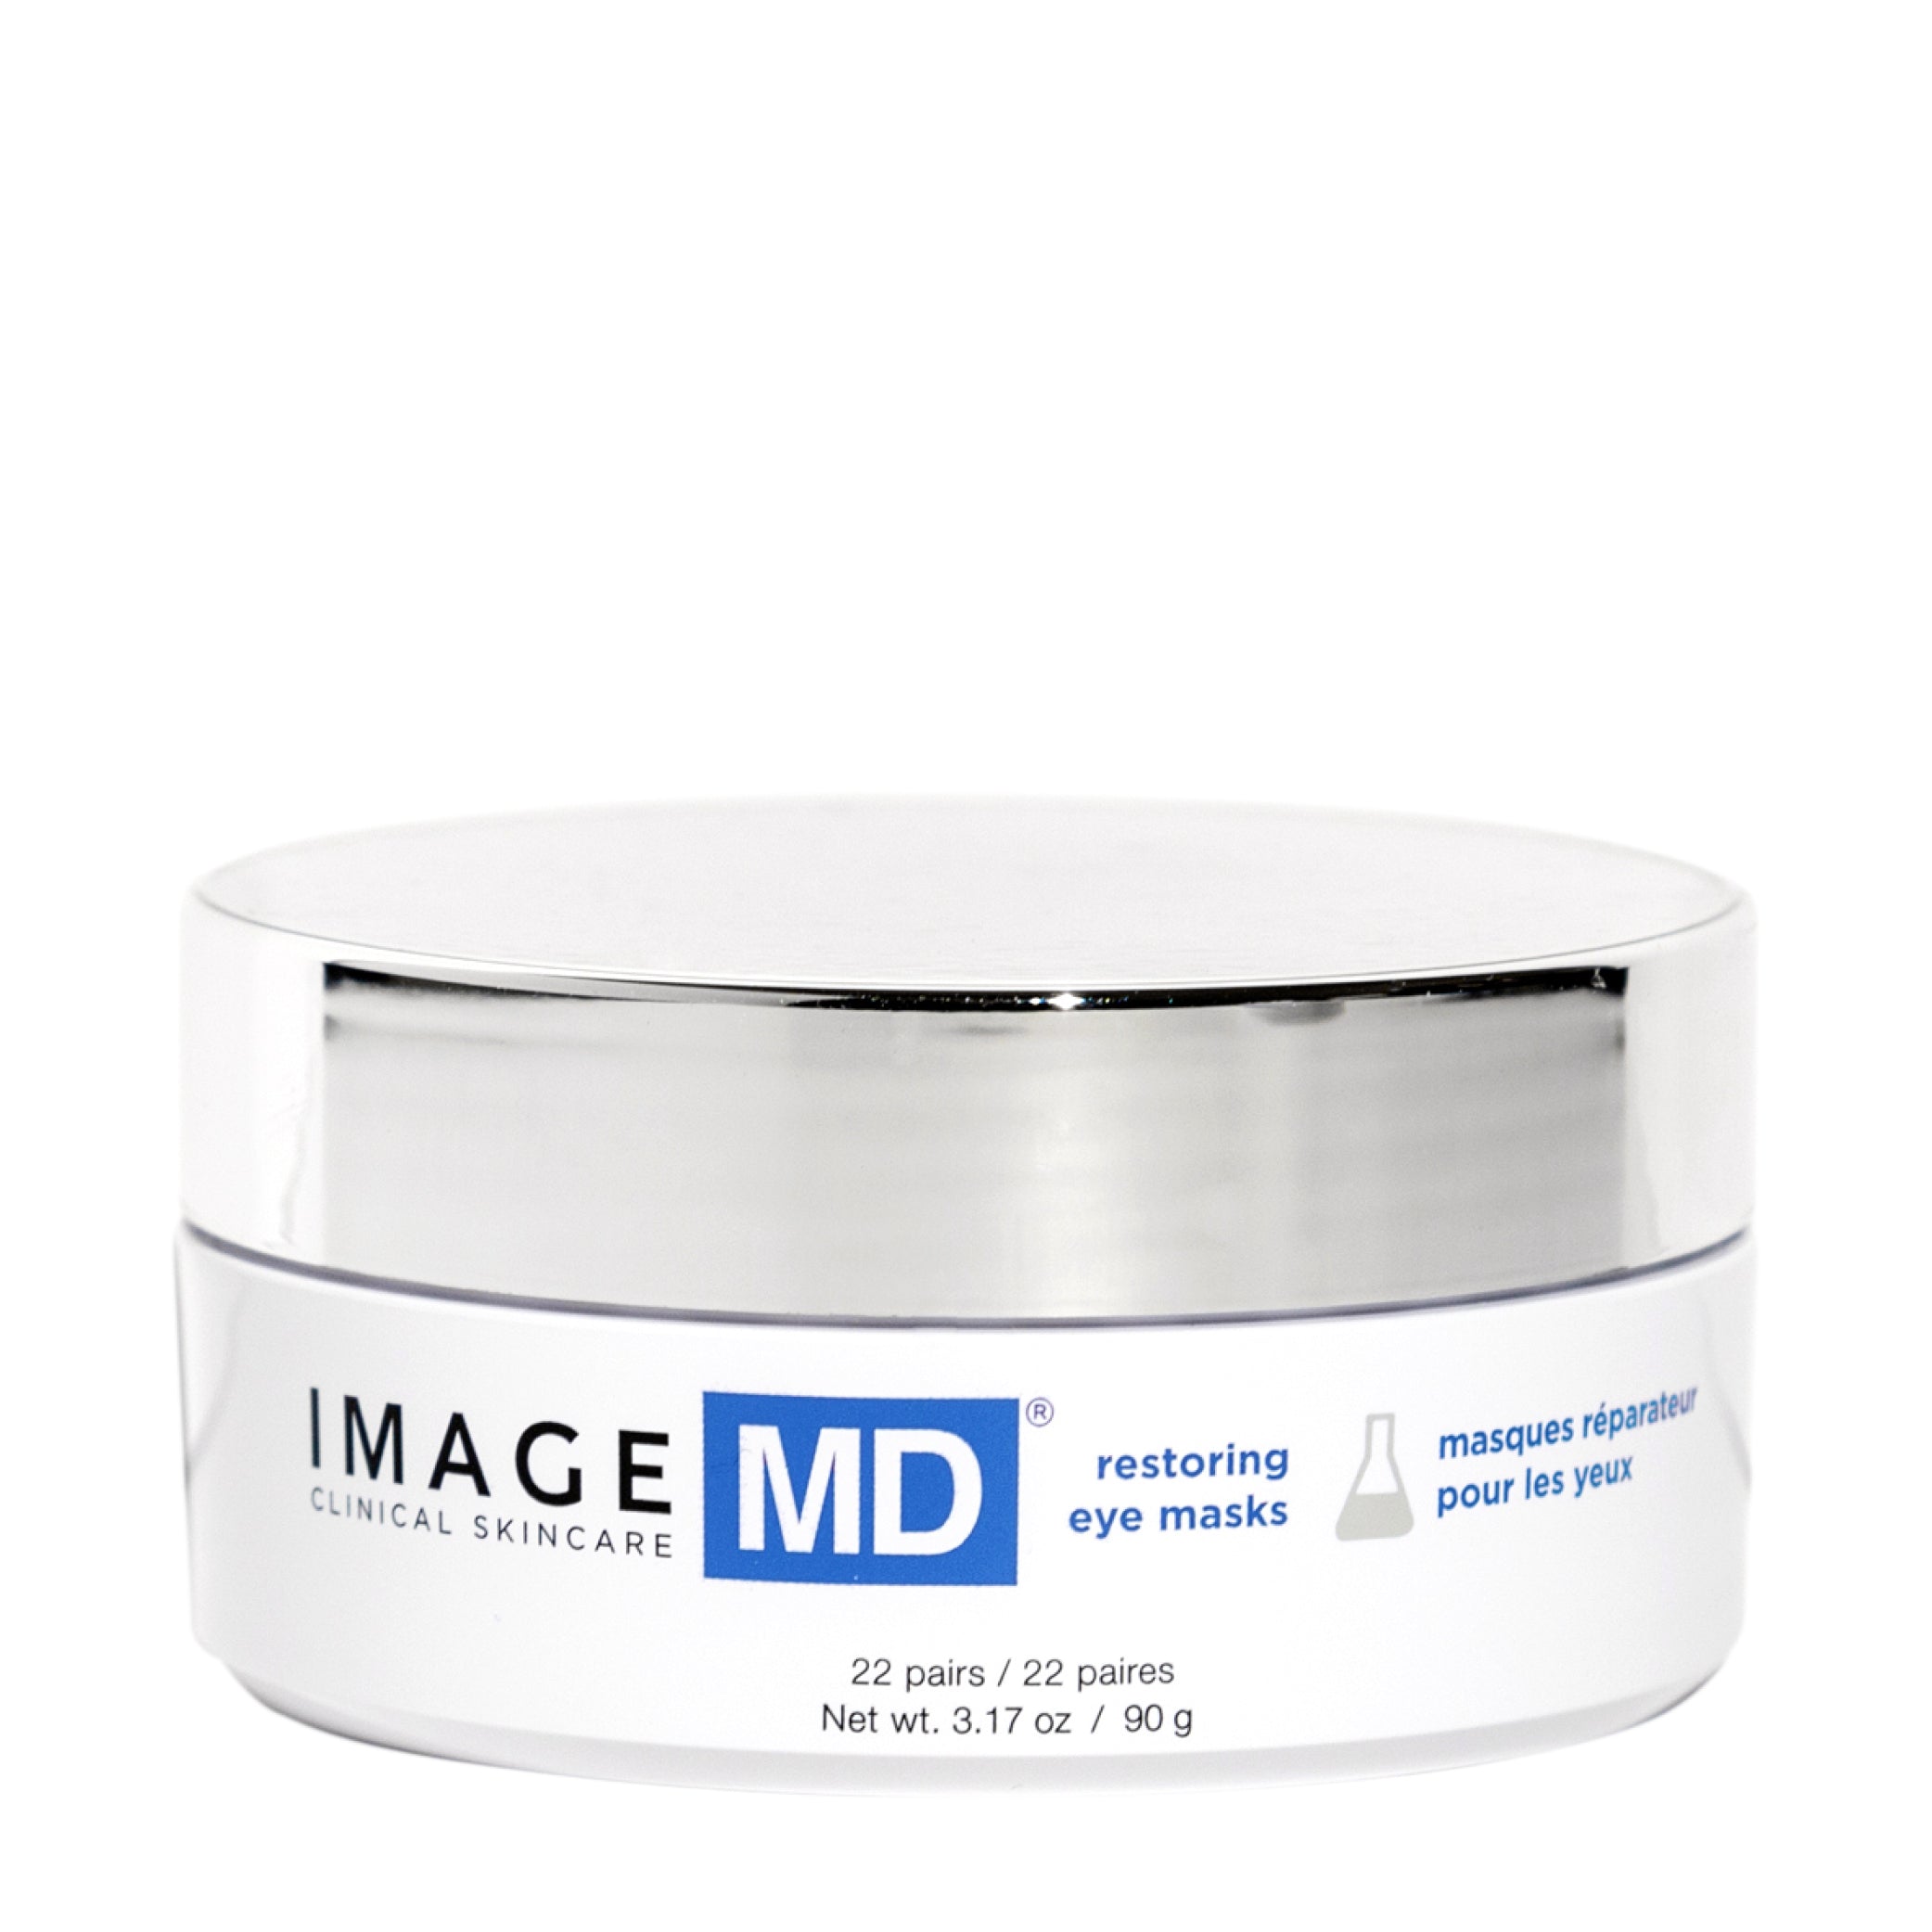 IMAGE MD® Restoring Eye Masks